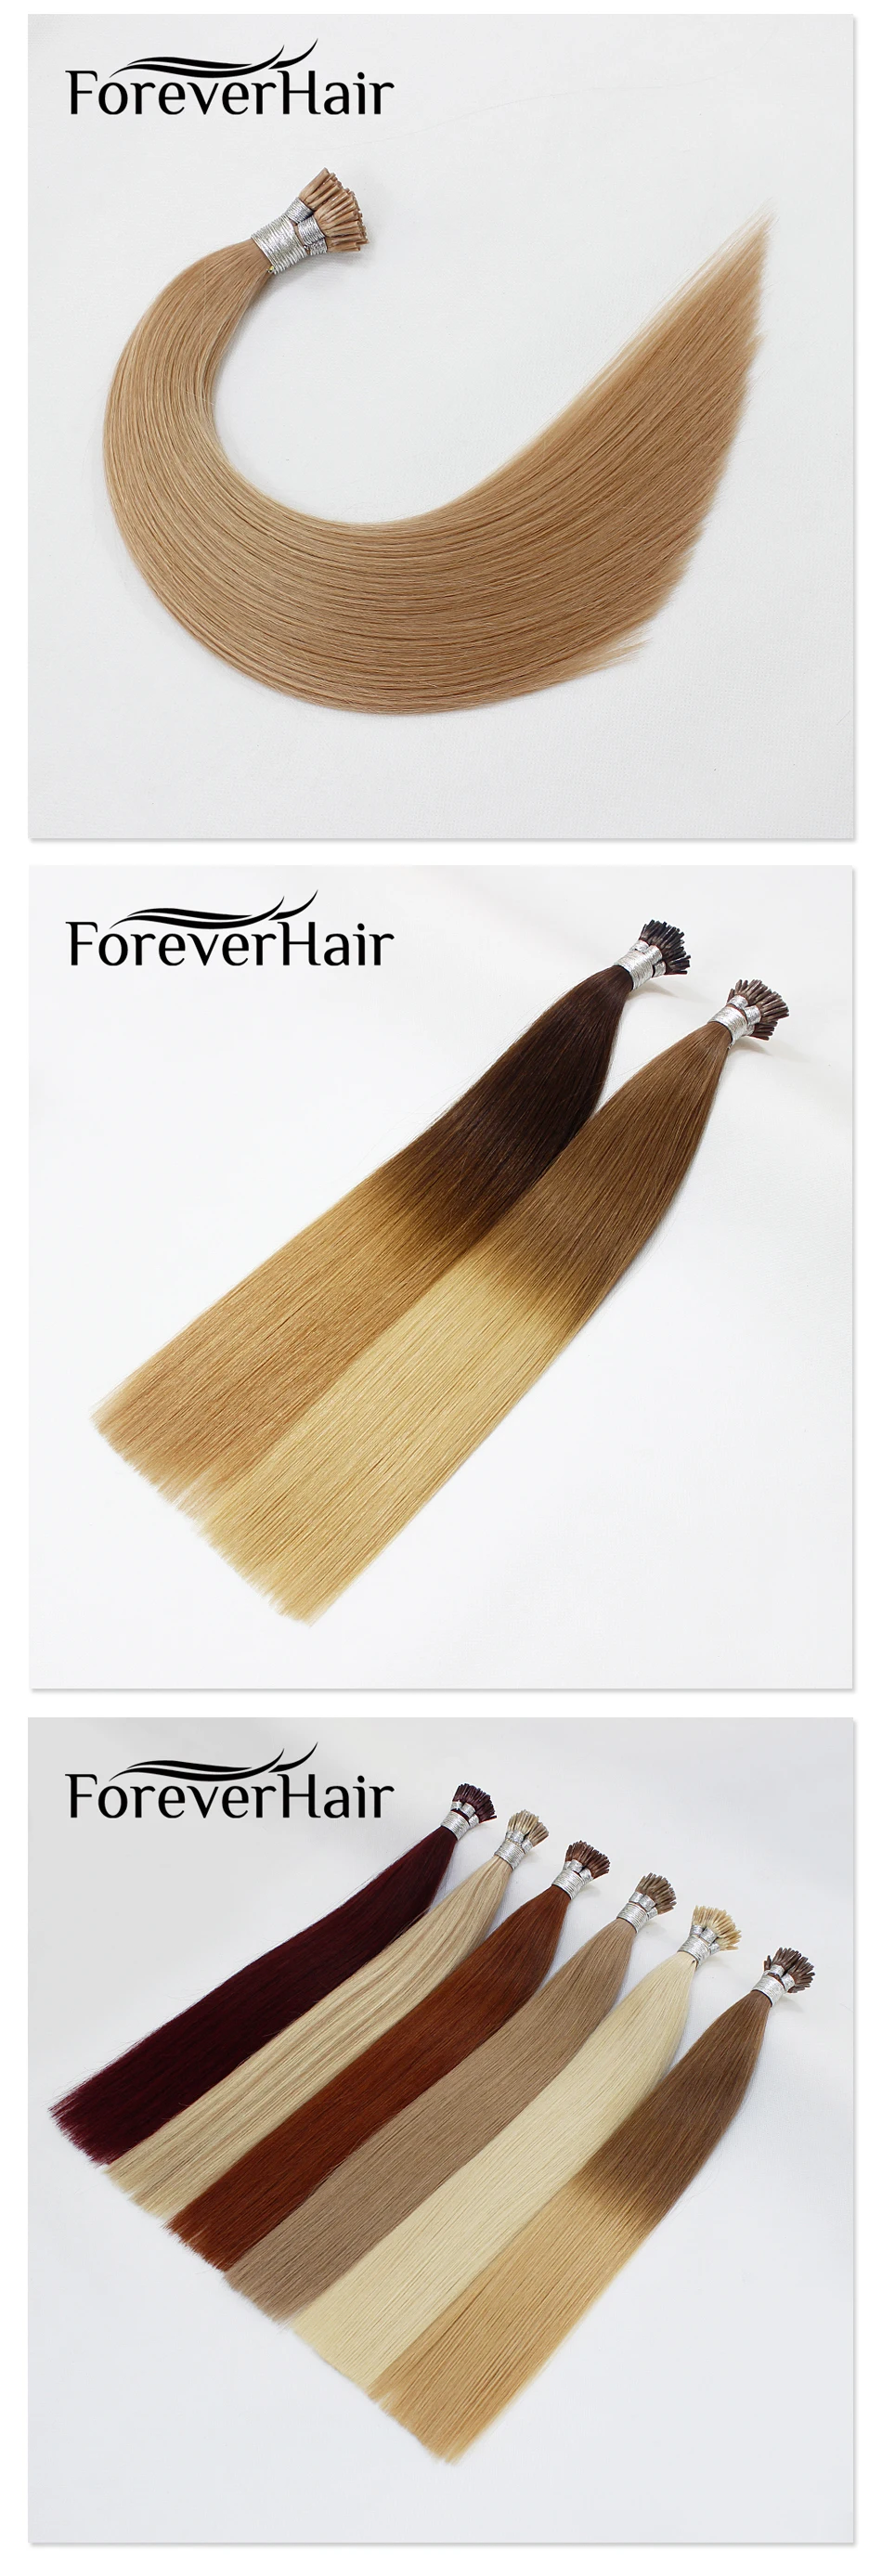 FOREVER HAIR 0,8 г/локон 1" Remy европейские накладные волосы для наращивания на кончиках, натуральные человеческие волосы для наращивания на кератиновой основе, 50 шт./ПАК